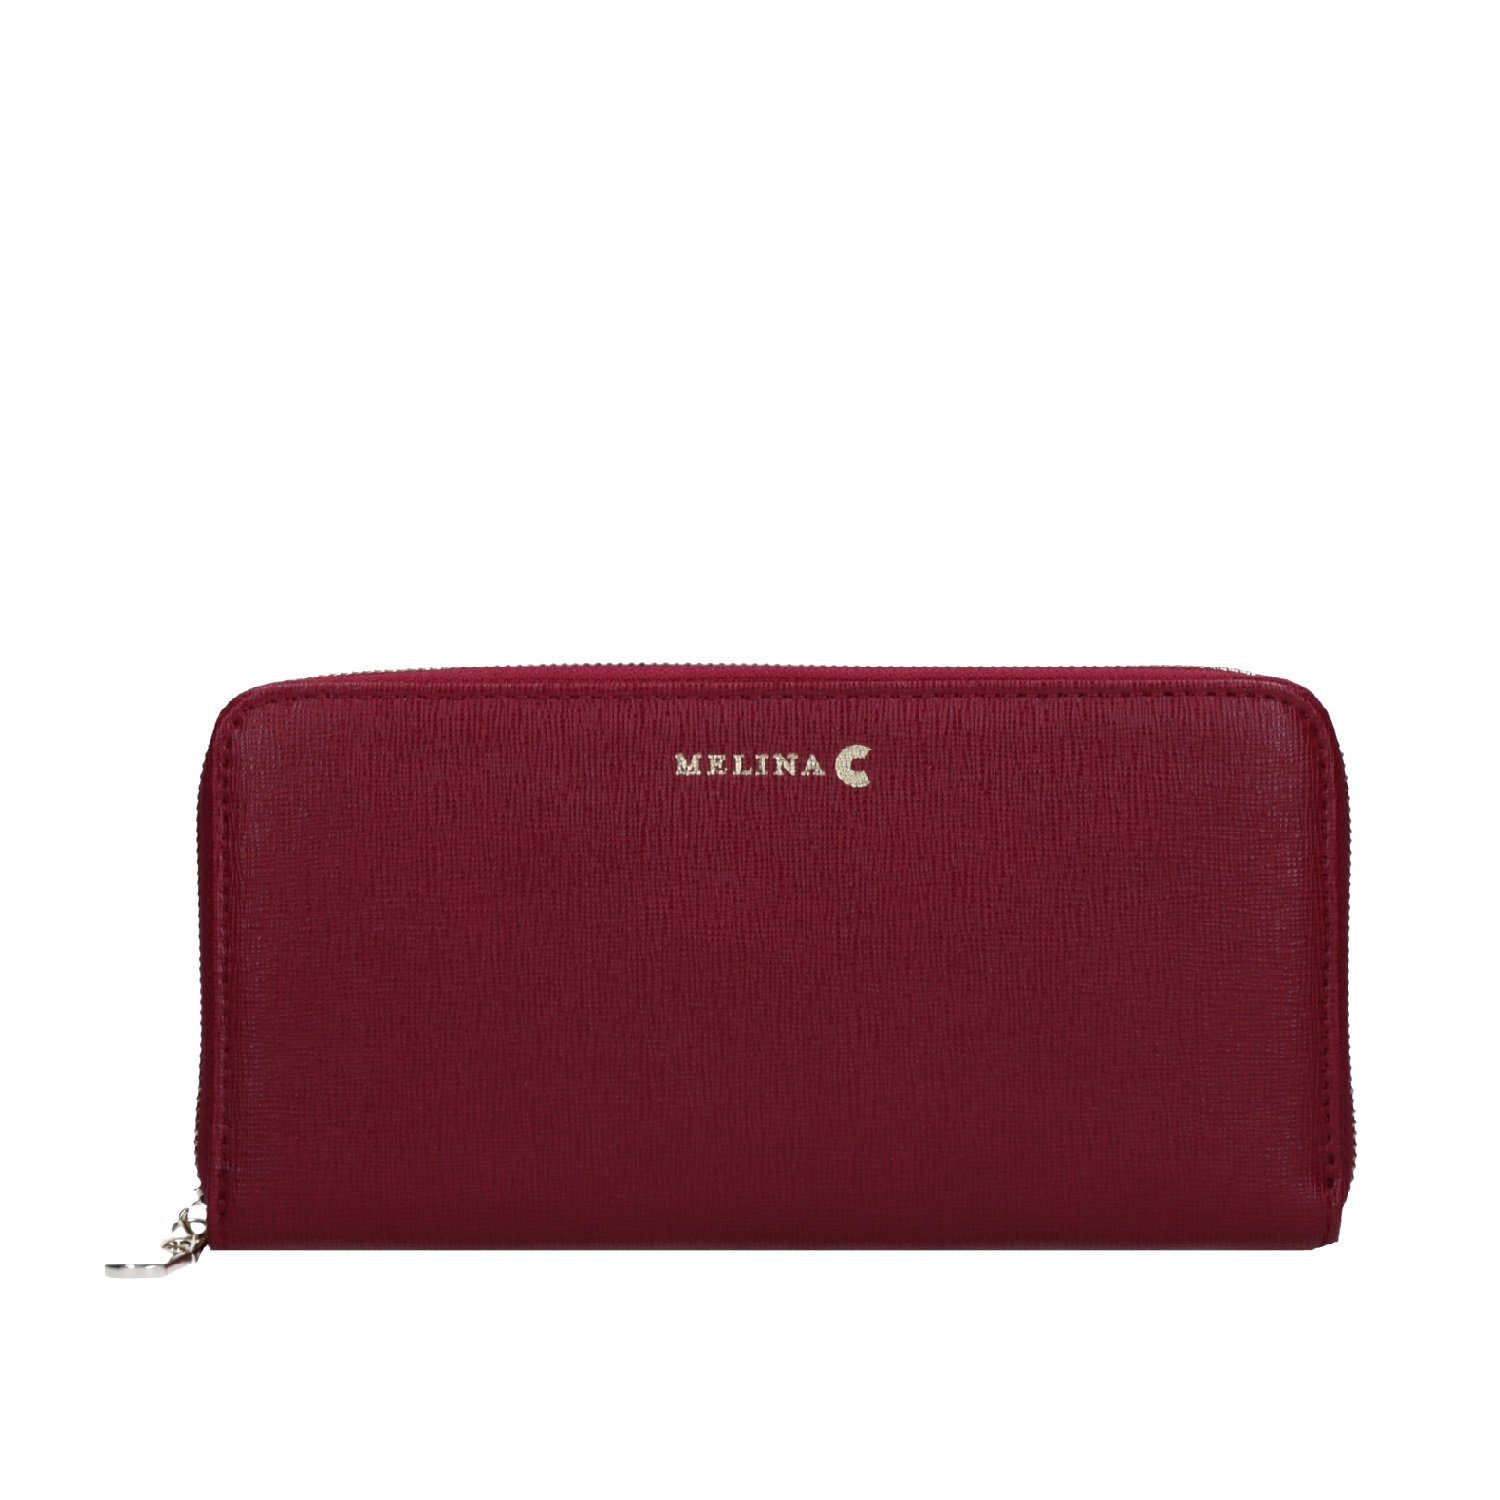 Verstellbare Melina red Geldbörse, Schulter Umhängetasche Träger C Tasche Melina C Echtleder